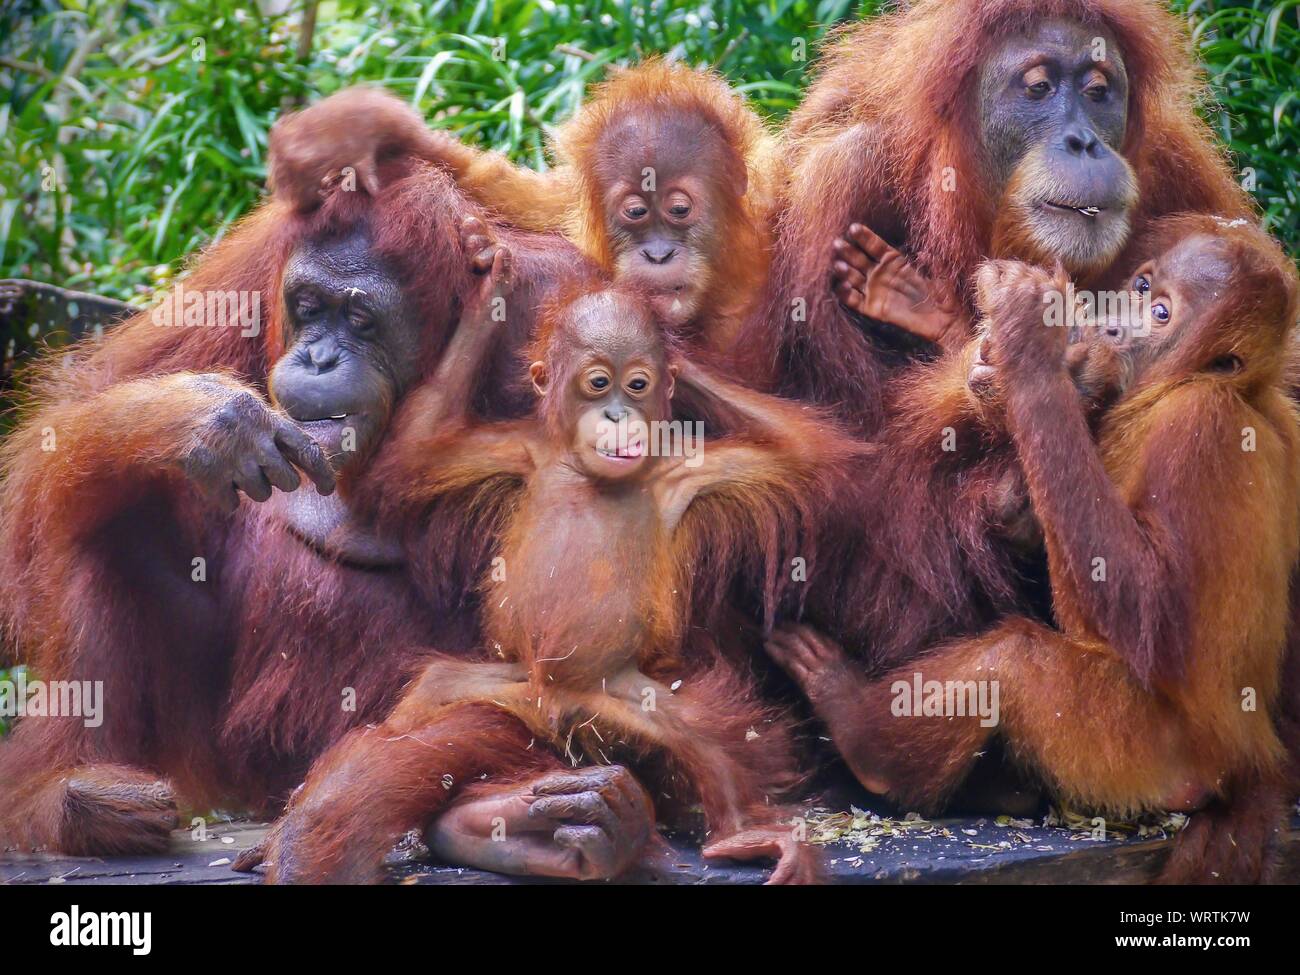 Gracioso retrato de un grupo de orangutanes, incluidos dos madres con sus crías jóvenes, disfrutando de un aperitivo de las semillas de girasol. Foto de stock